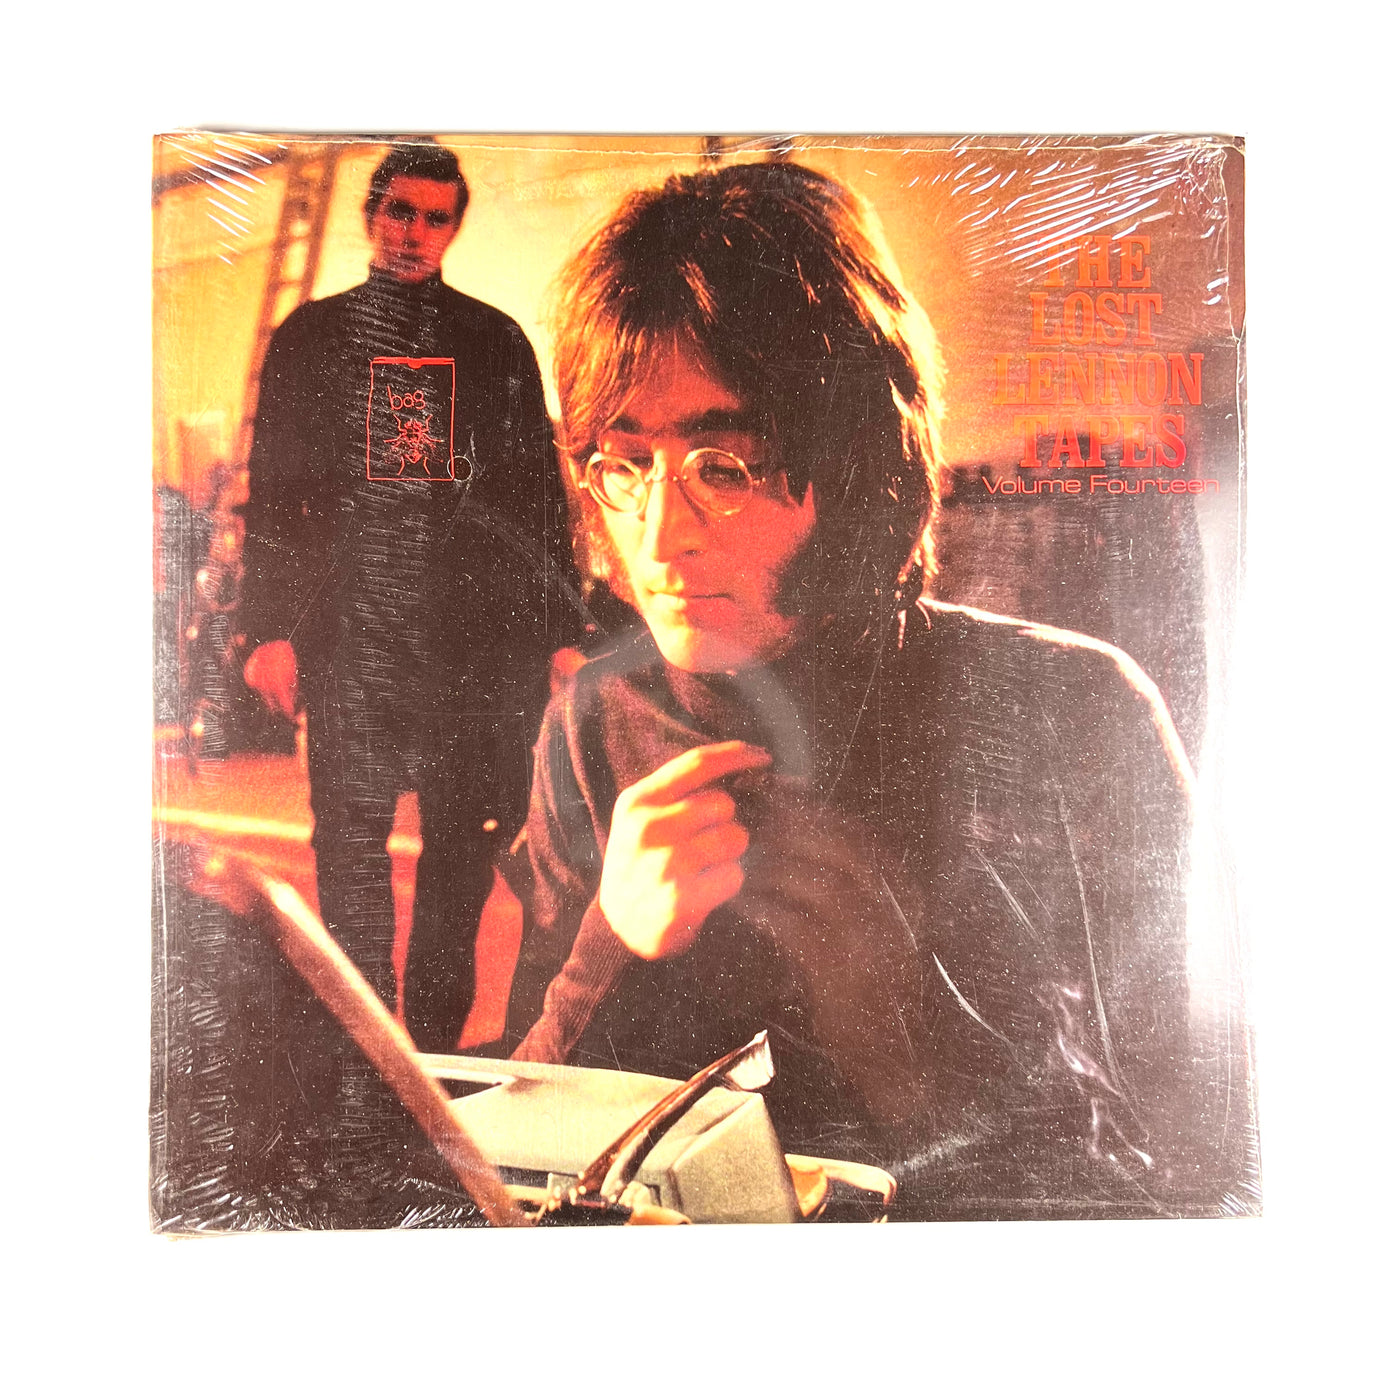 John Lennon - The Lost Lennon Tapes Volume Fourteen